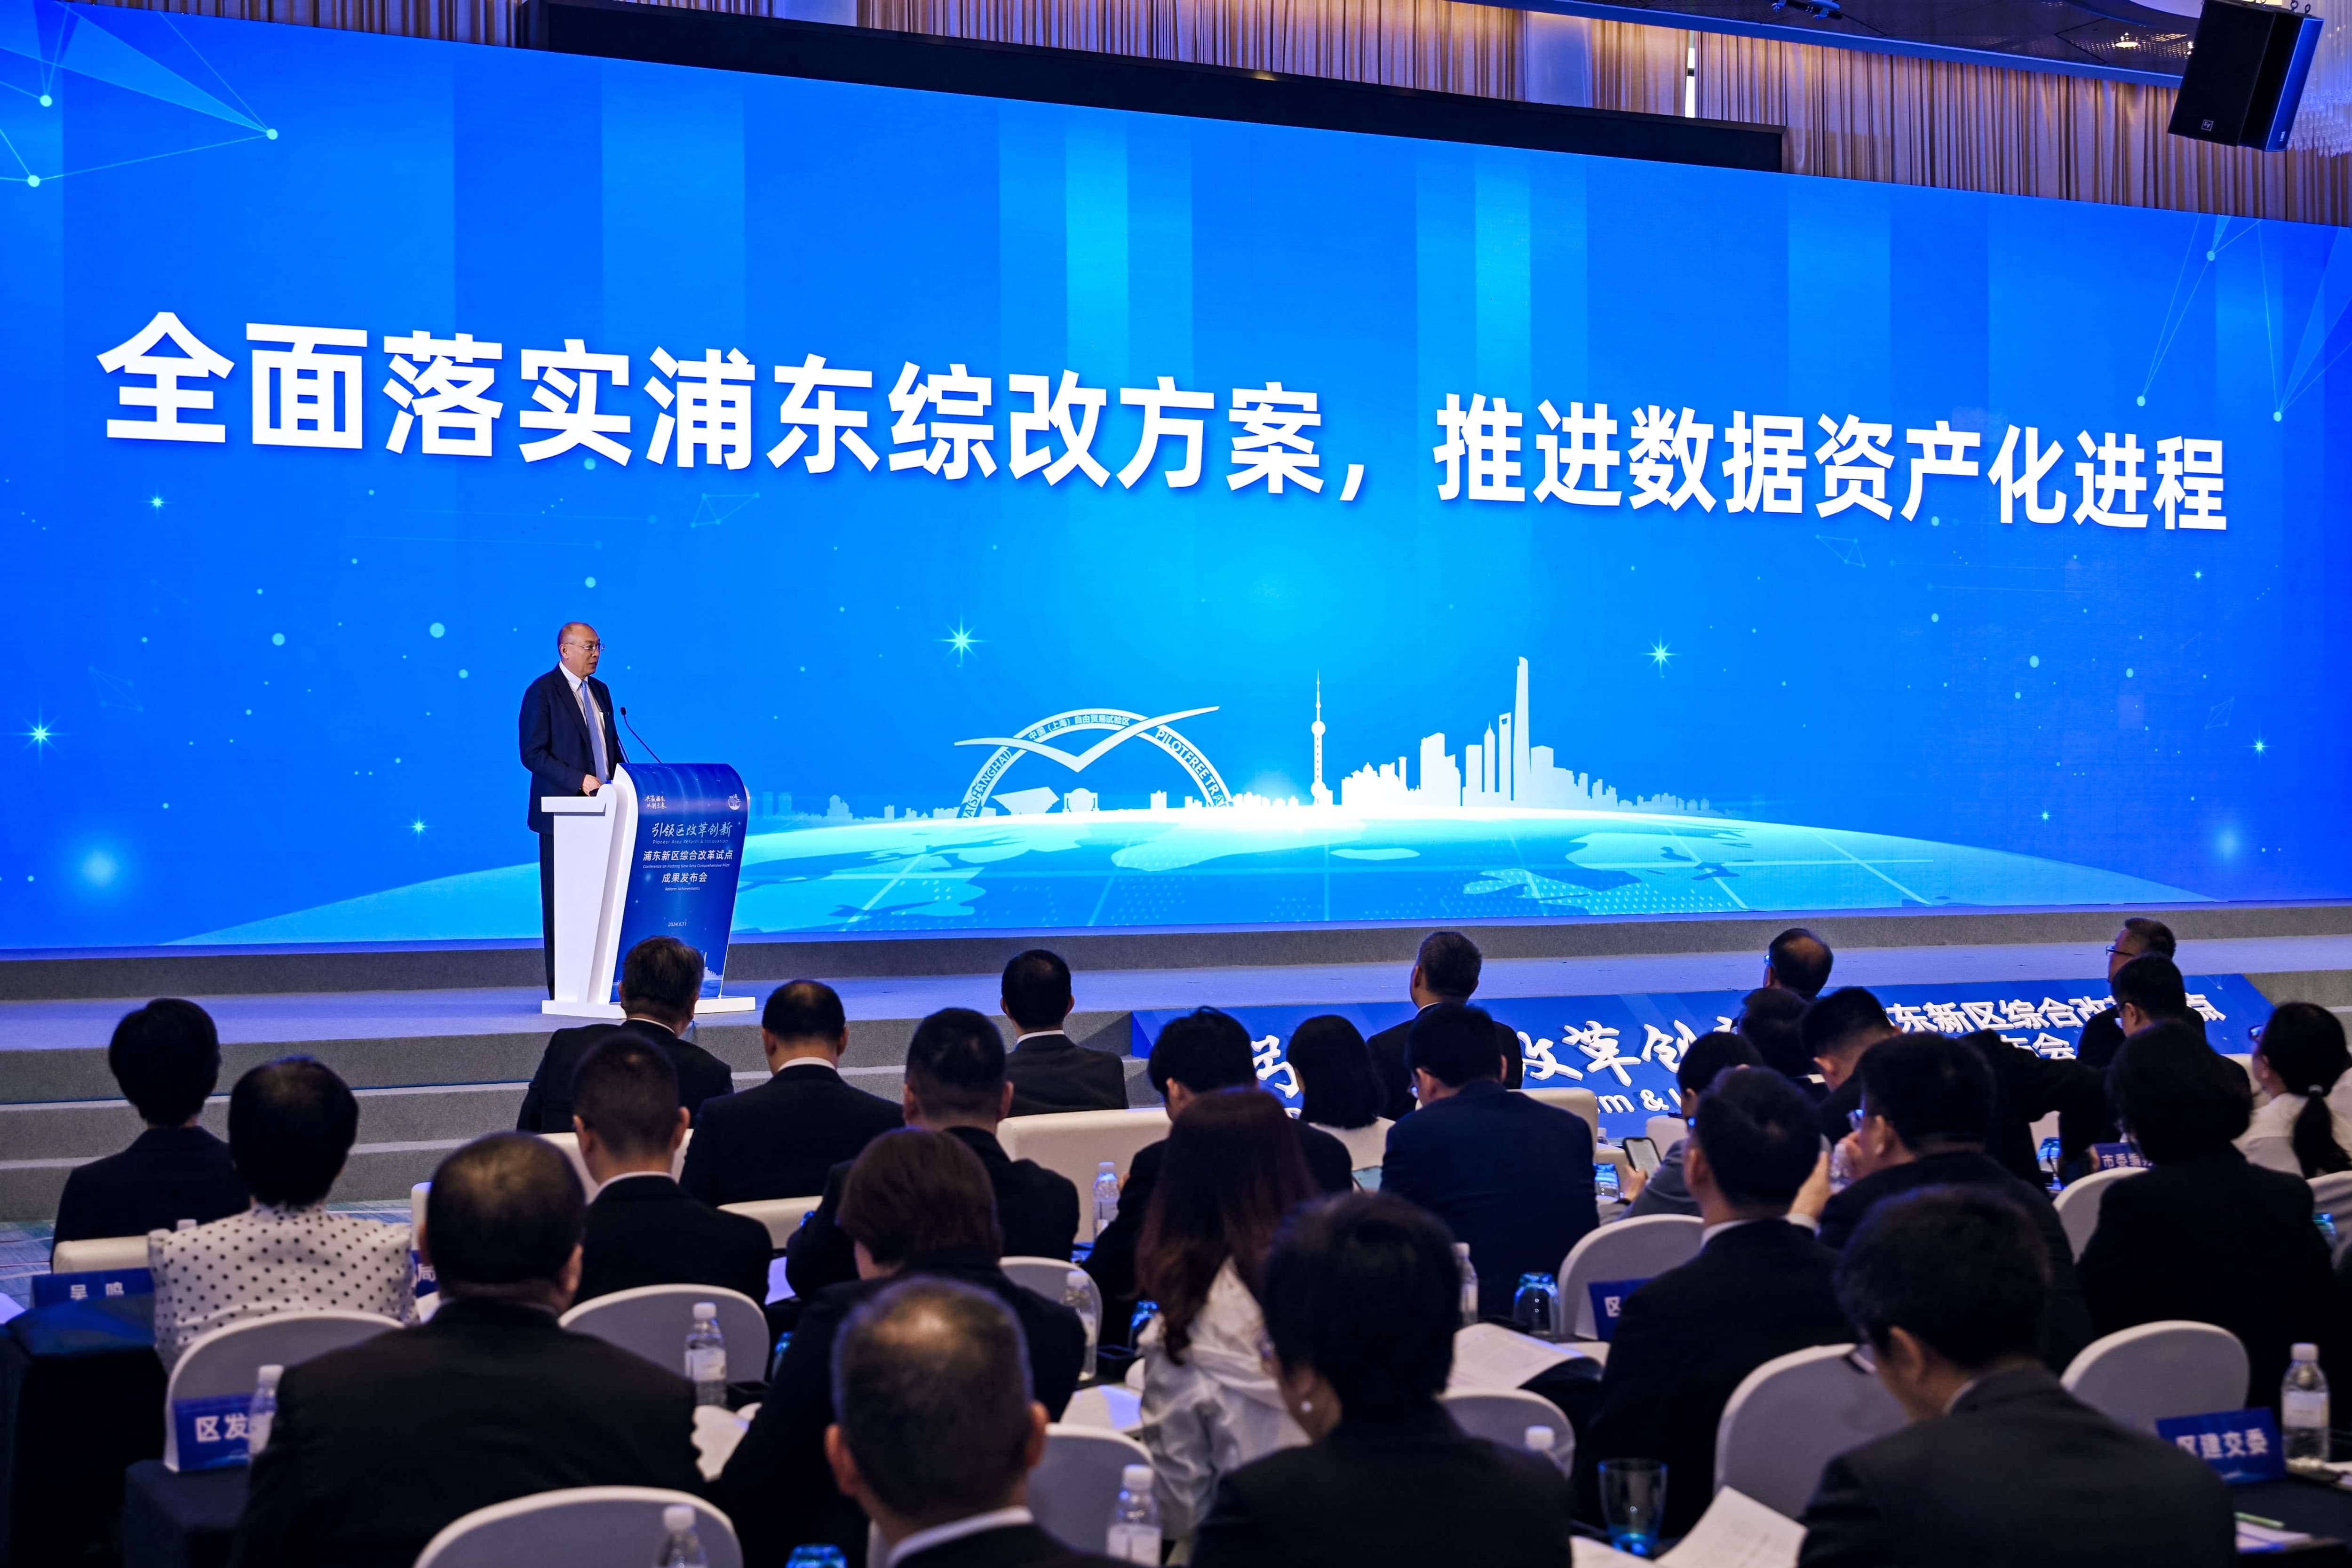 上海数据交易所总经理汤奇峰出席浦东新区综合改革试点成果发布会并作交流发言